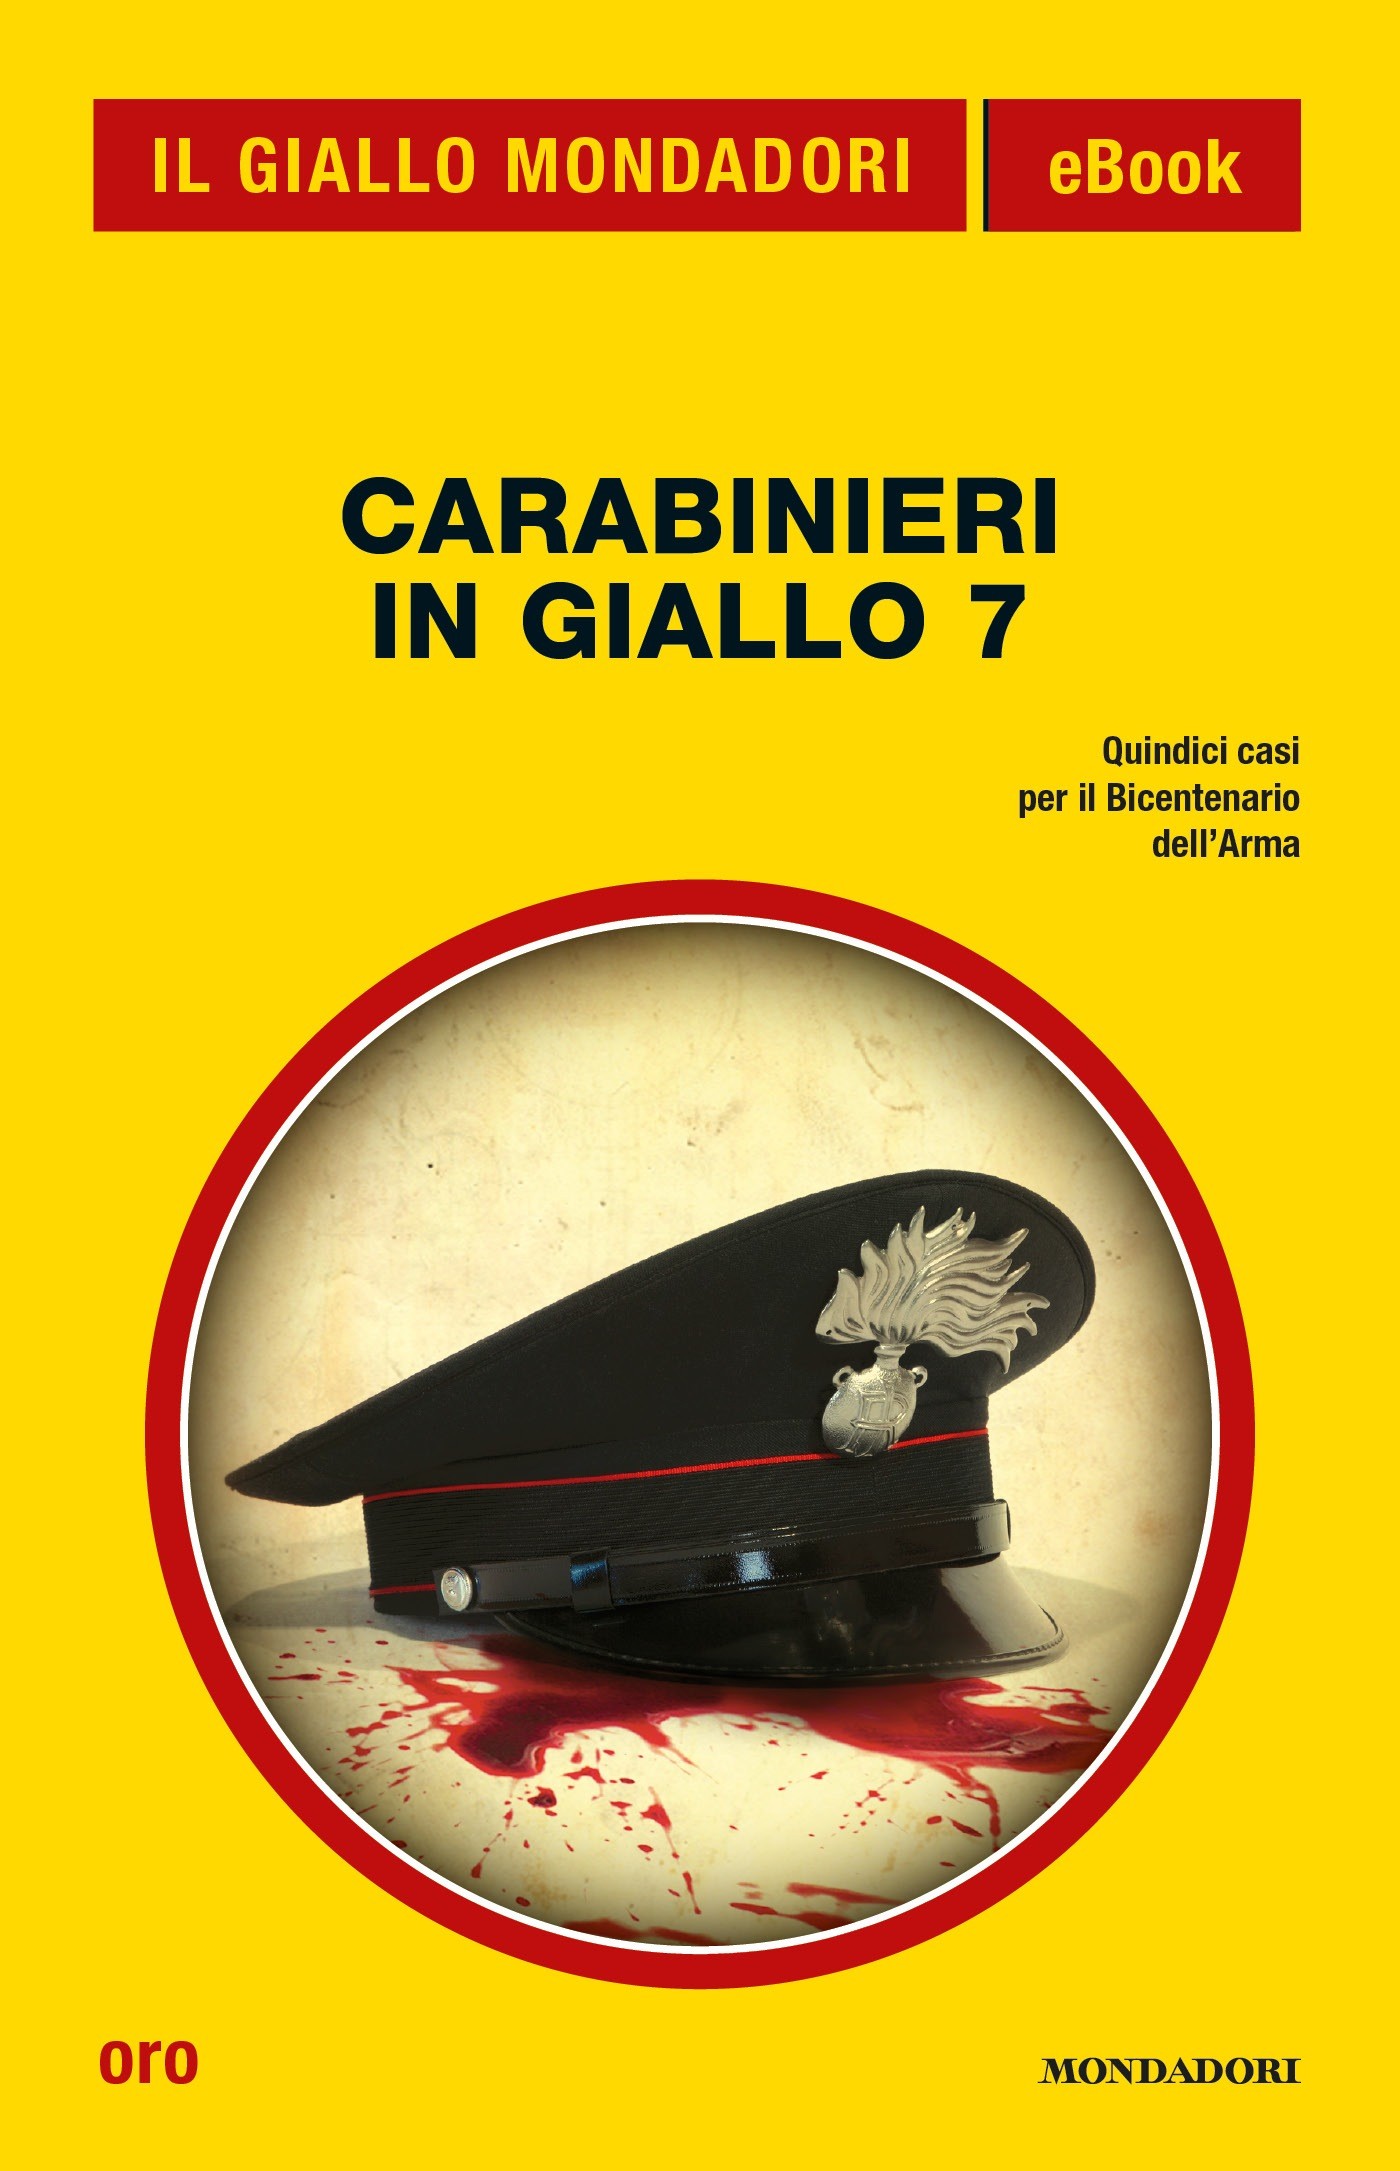 Carabinieri in giallo 7 (Il Giallo Mondadori) - Librerie.coop